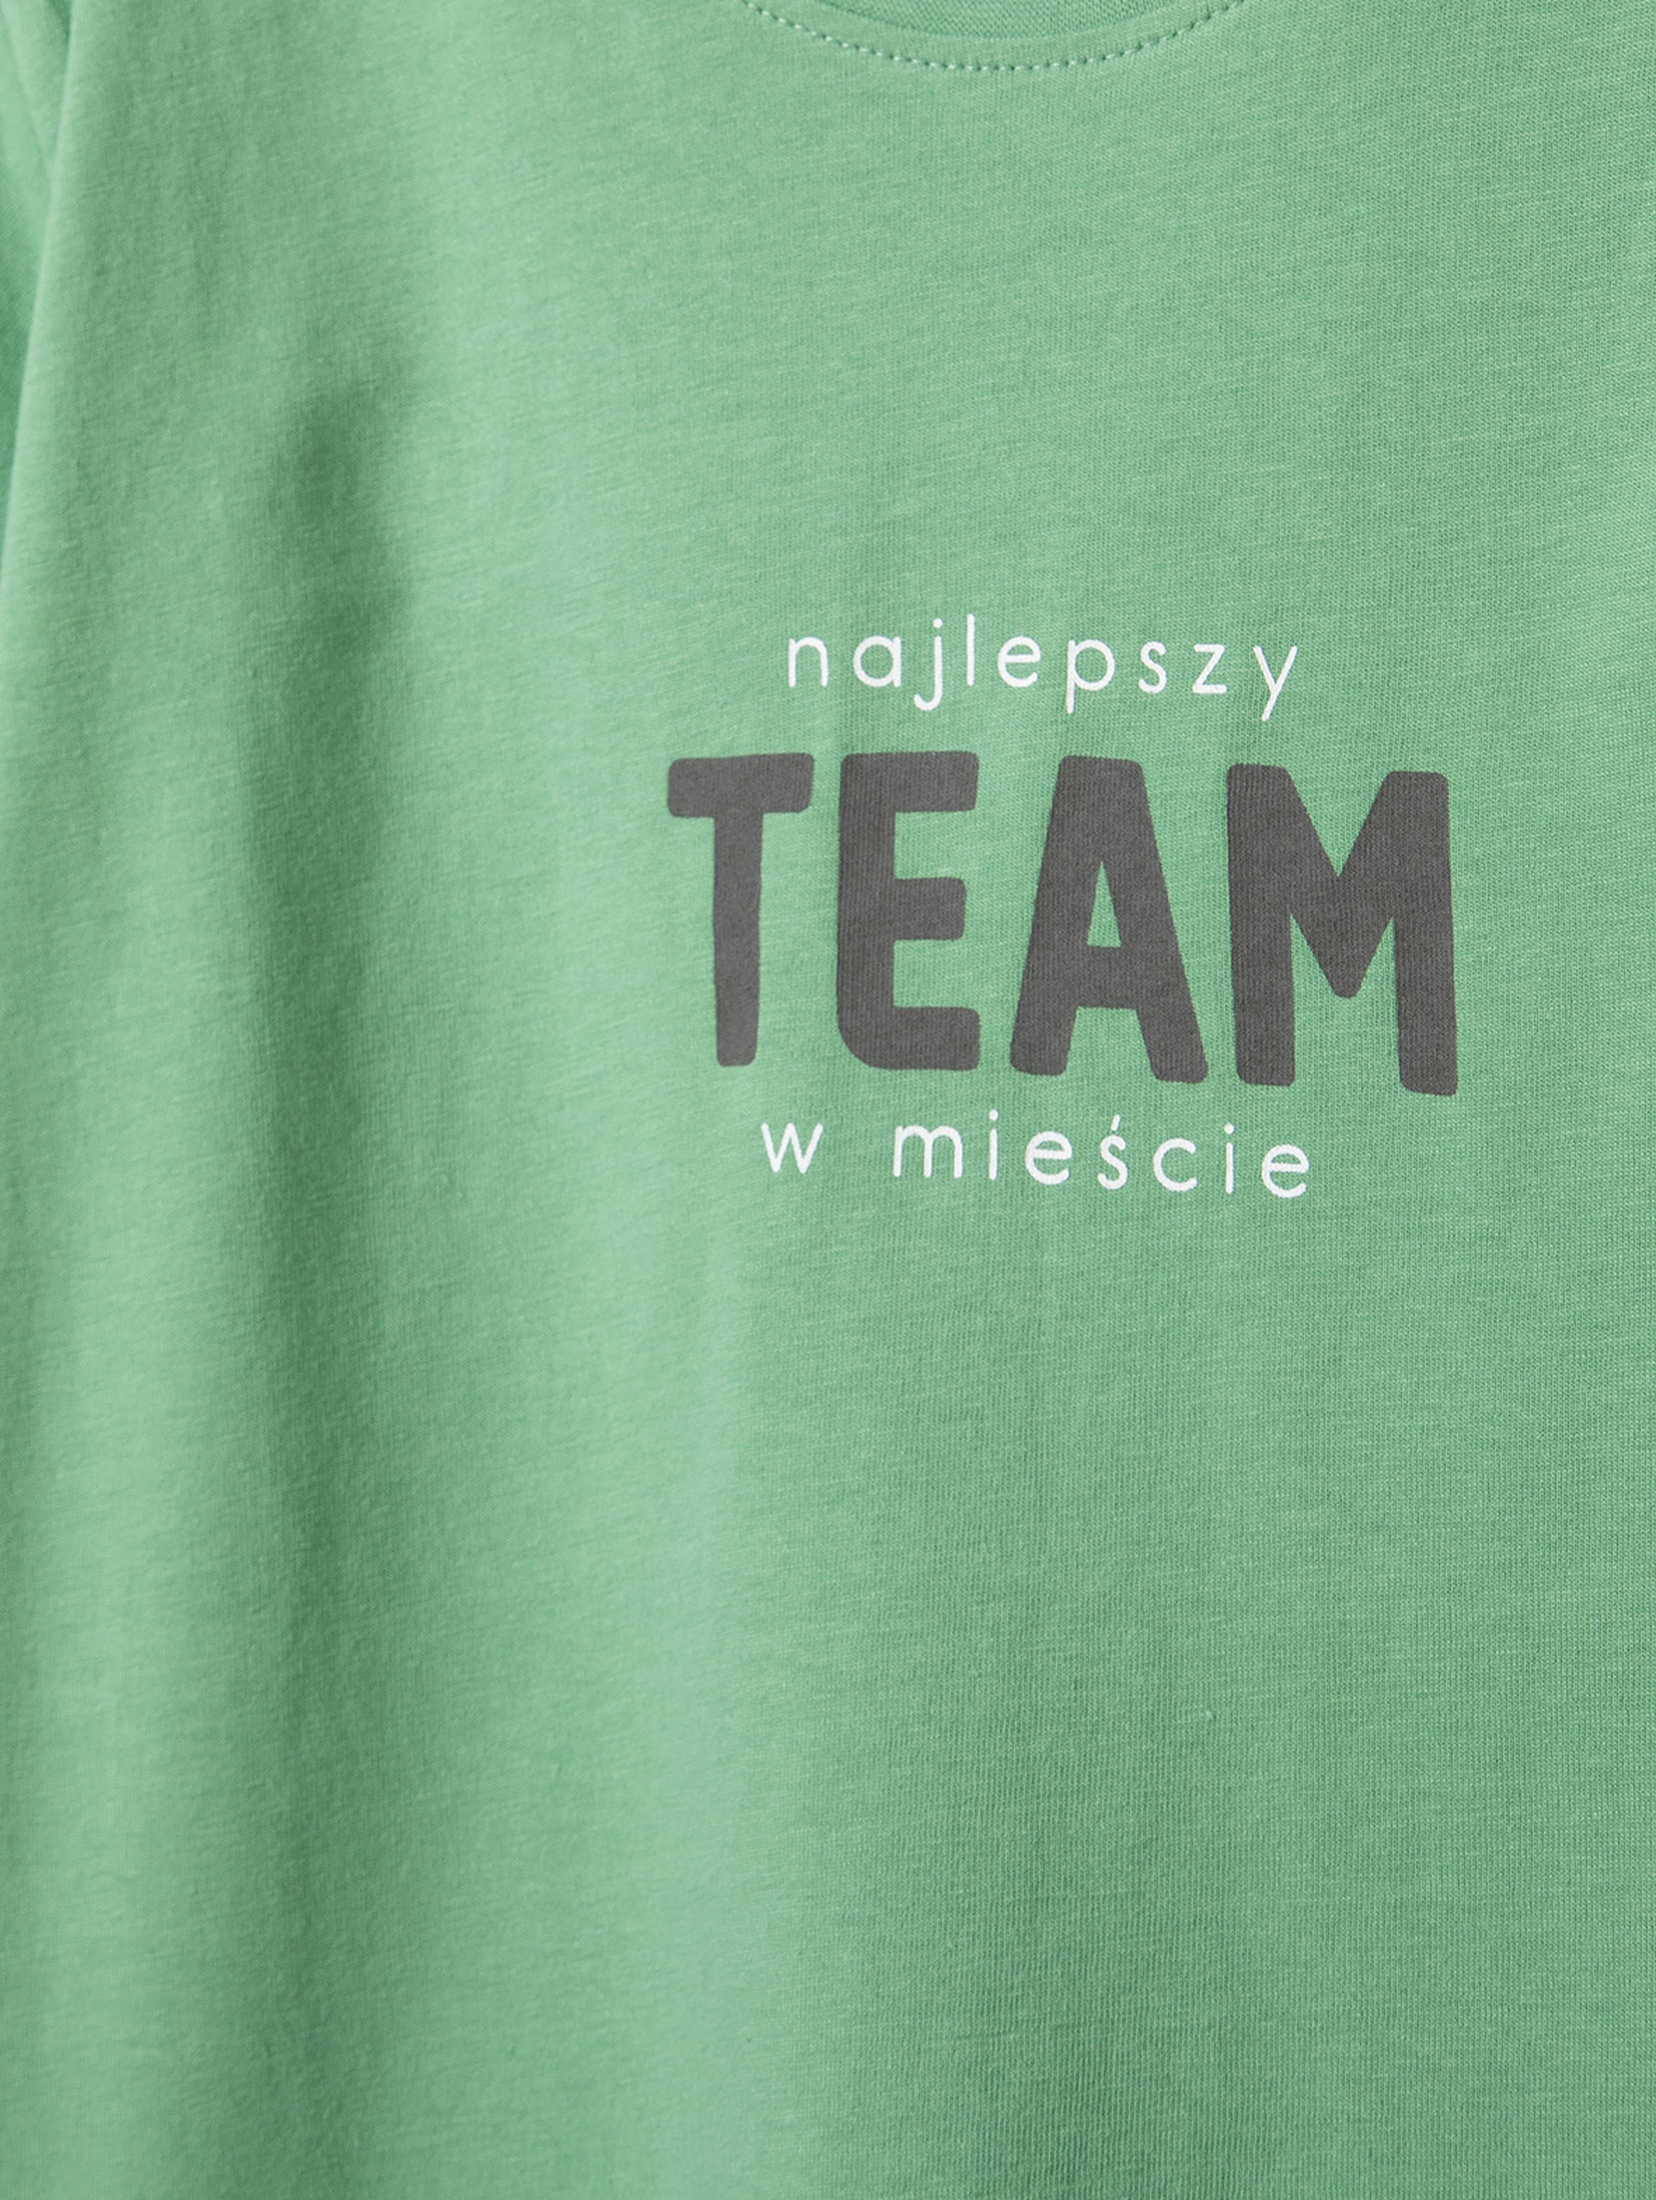 Bawełniany t-shirt chłopięcy z napisem najlepszy Team w mieście